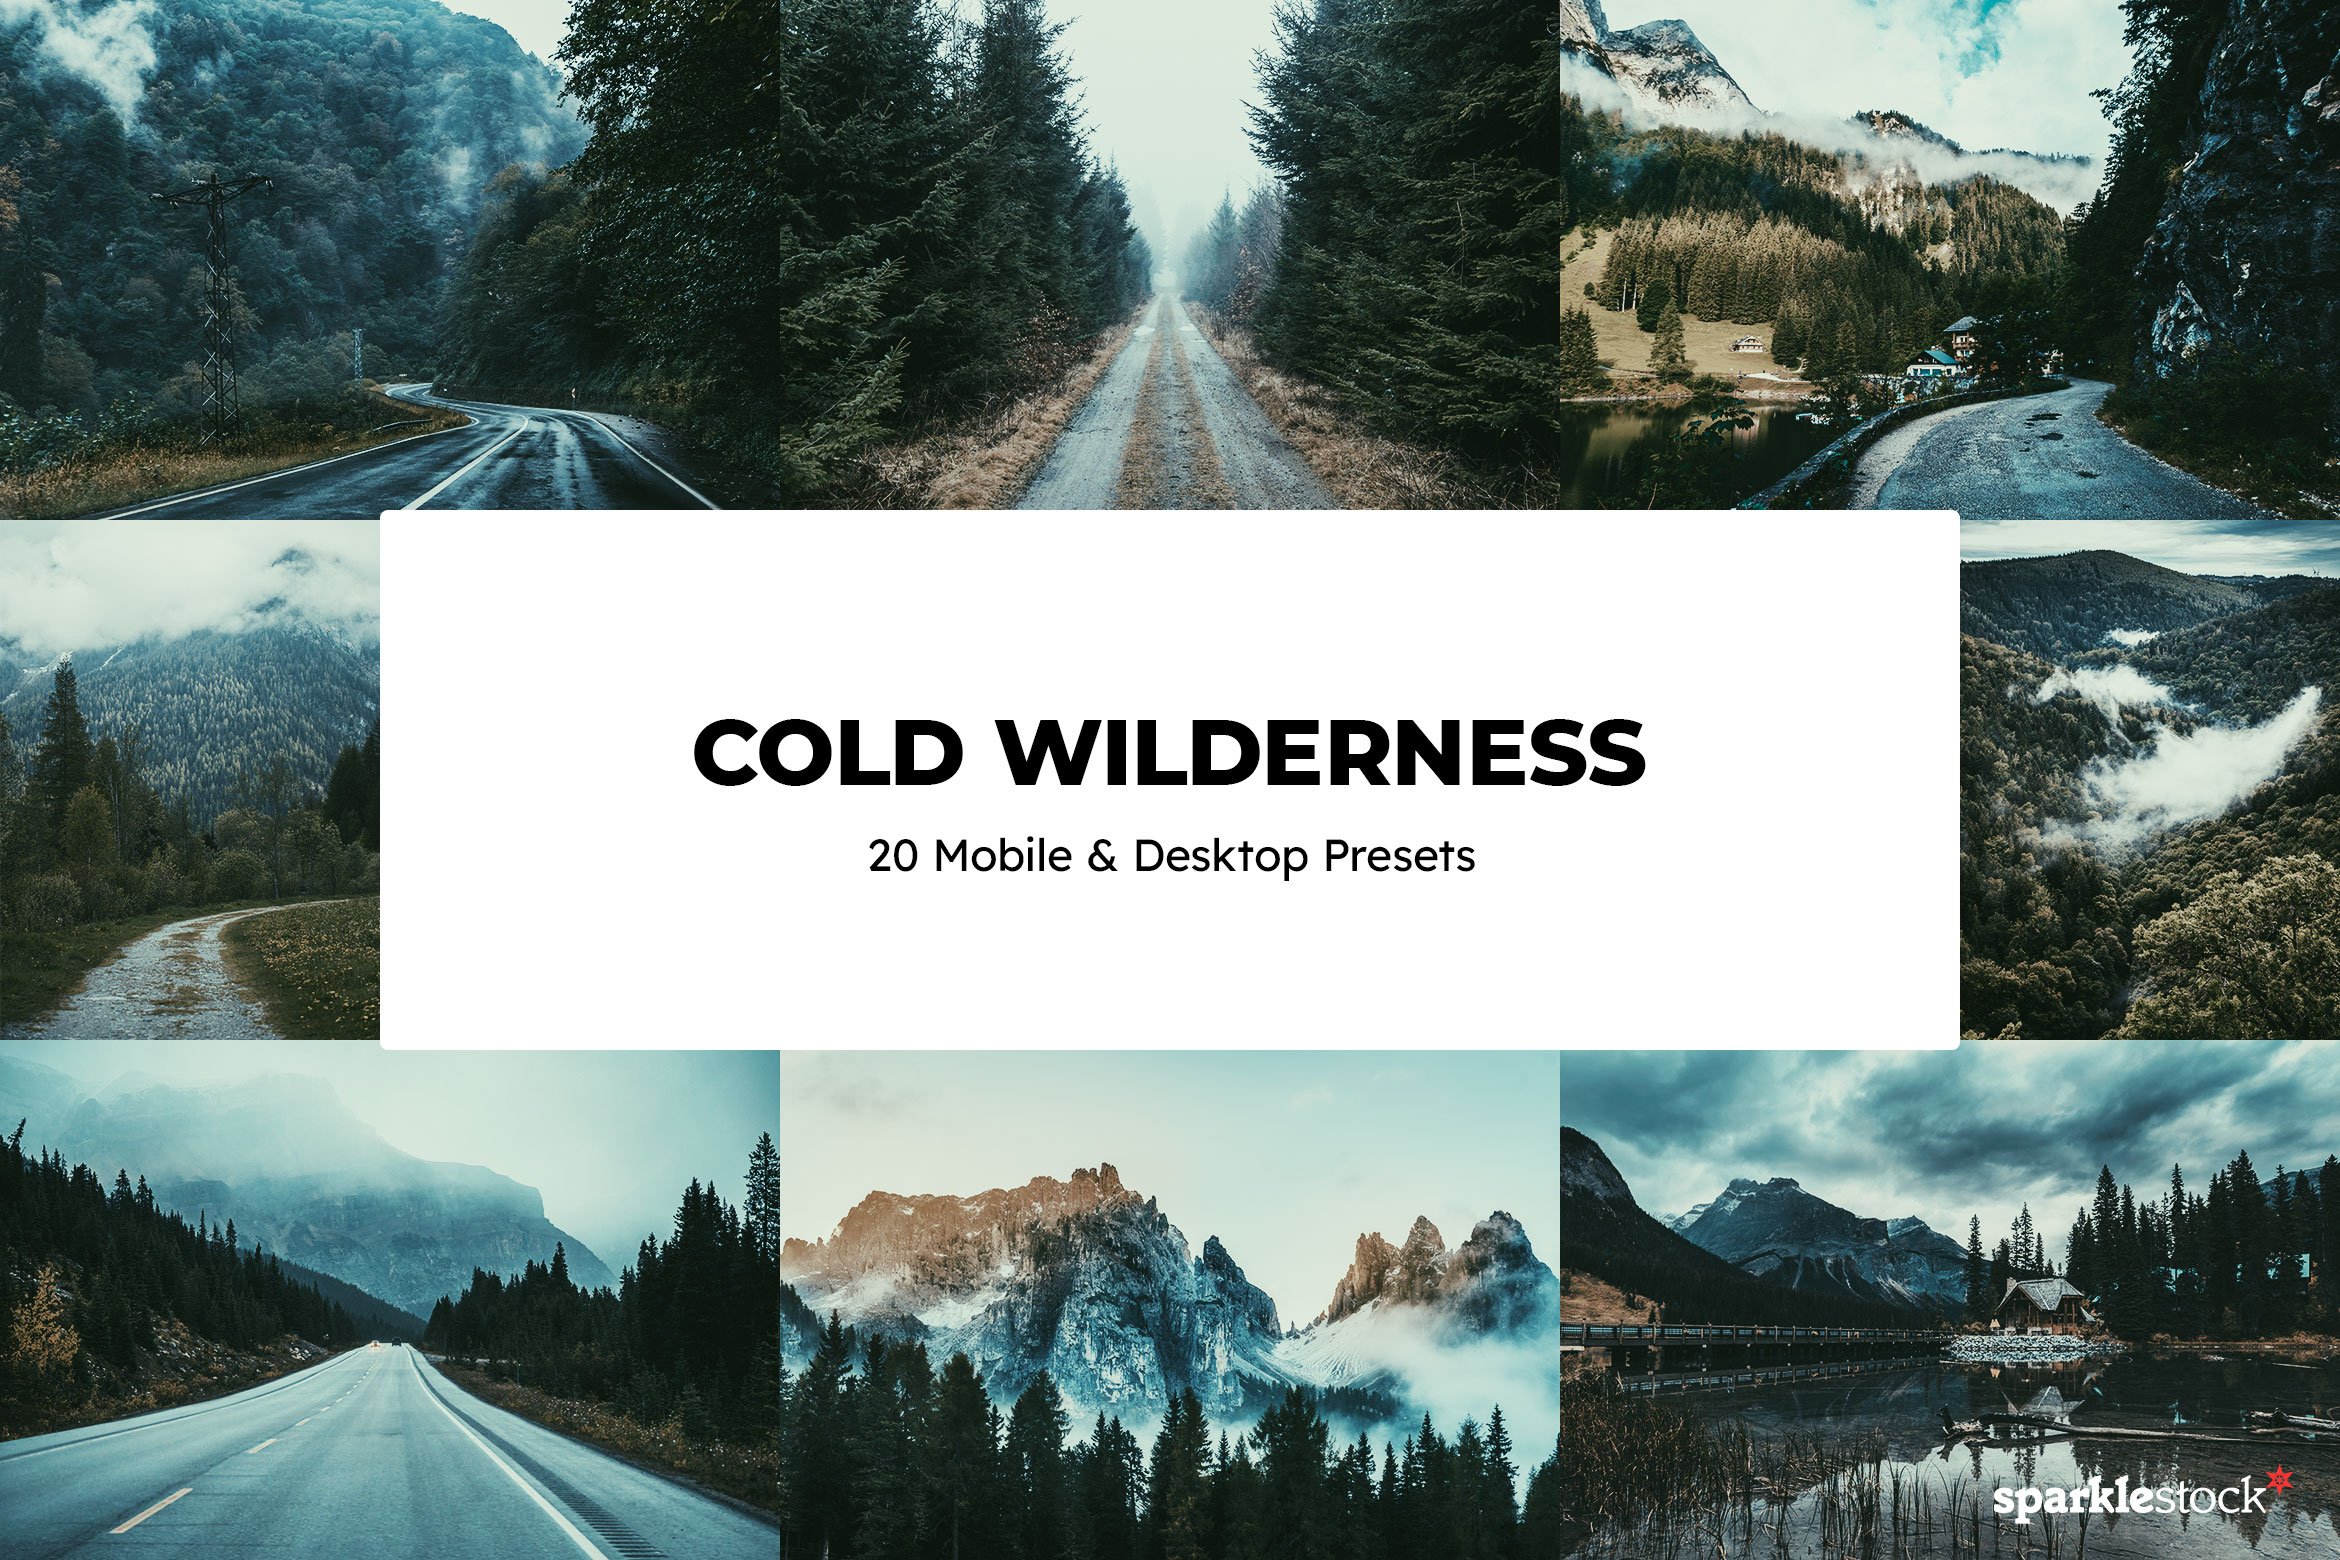 20 Cold Wilderness Lightroom Presetscover image.